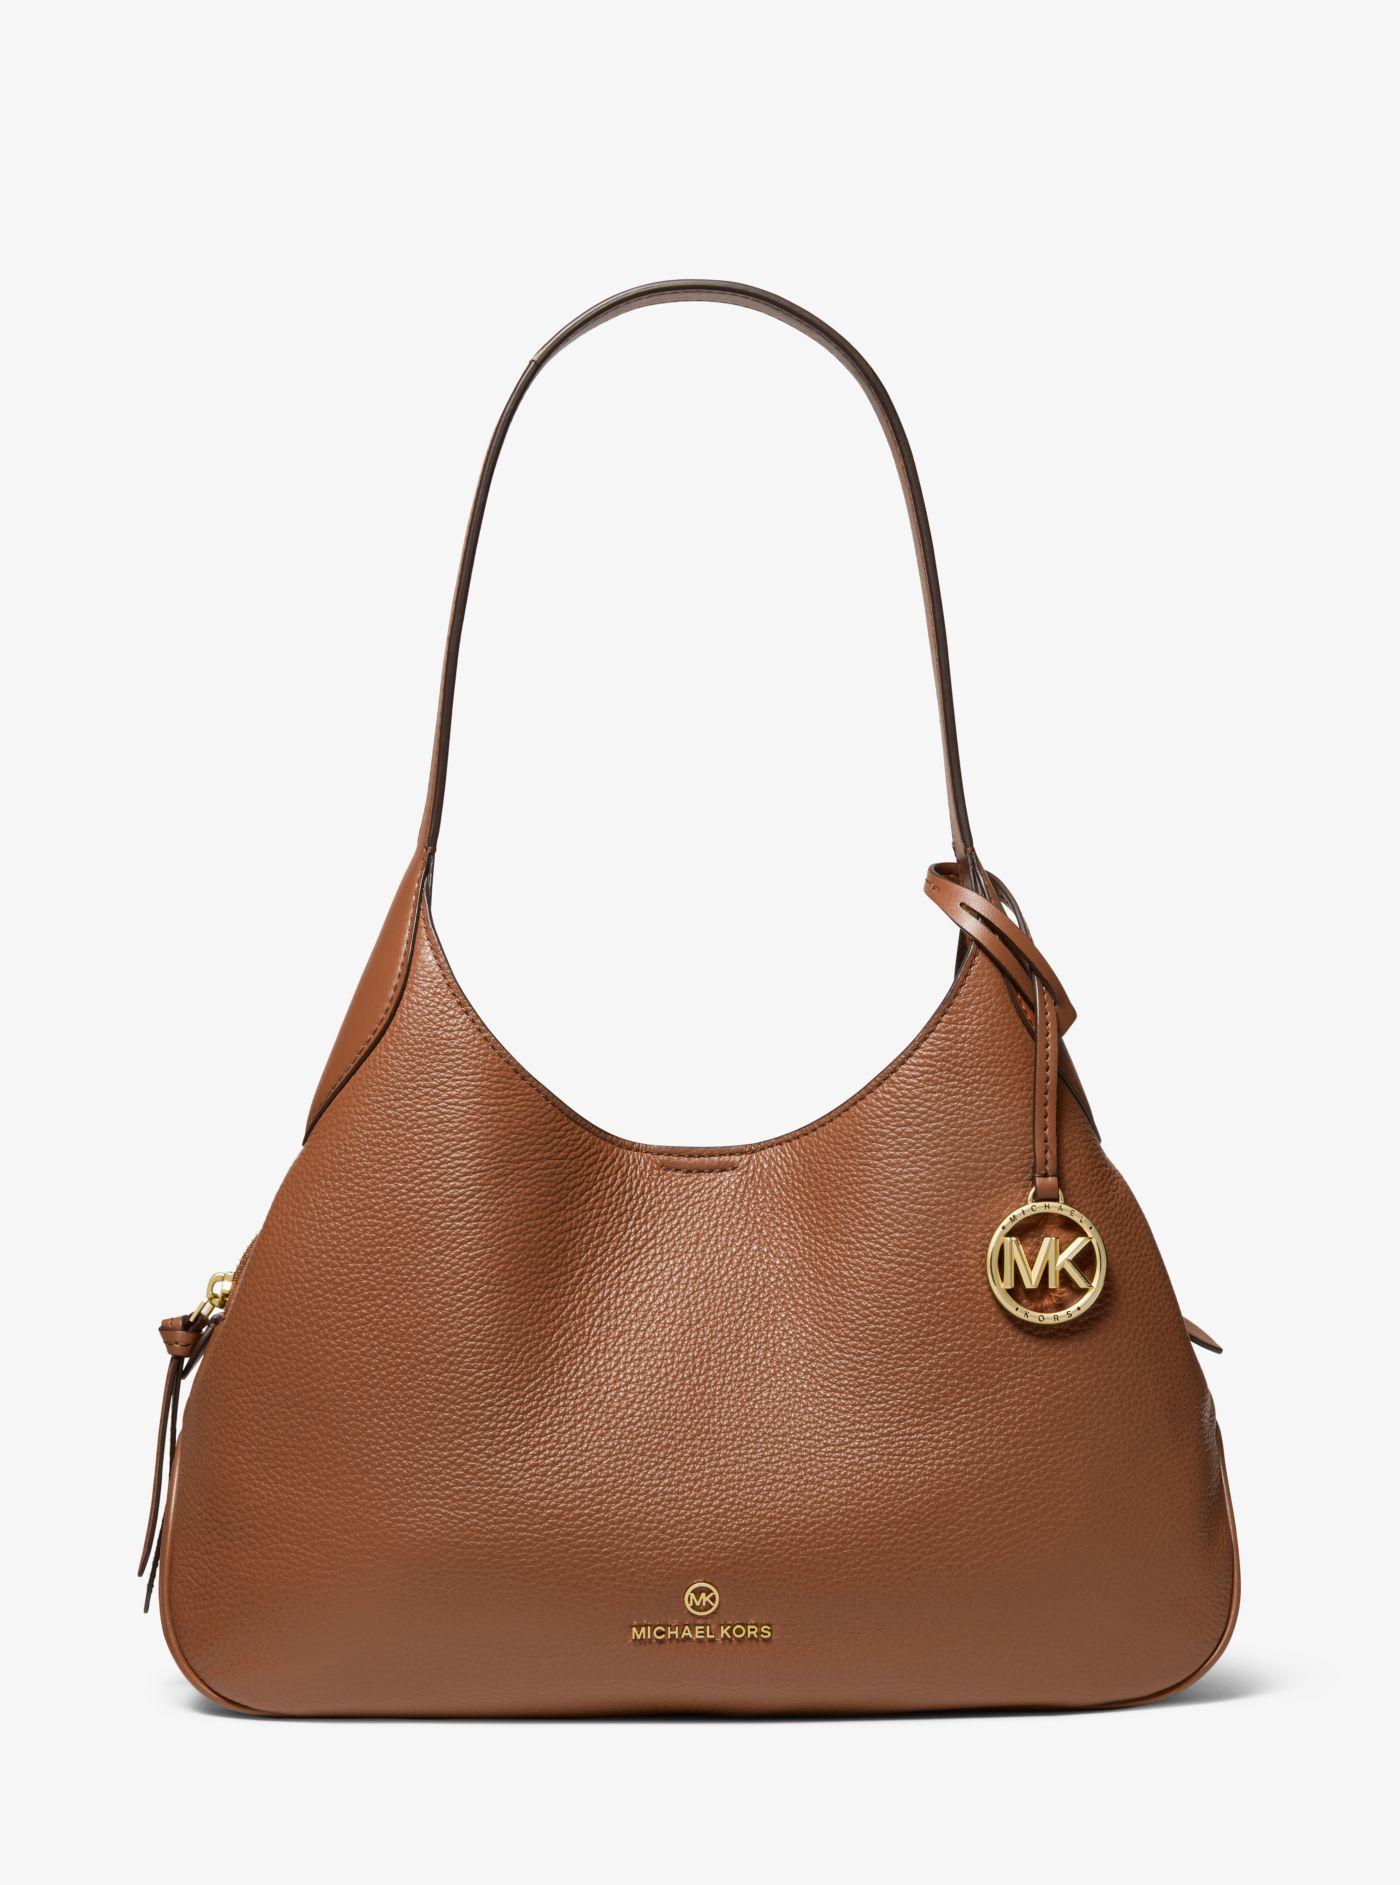 Michael Kors Kelsey Large Pebbled Leather Shoulder Bag in Brown | Lyst